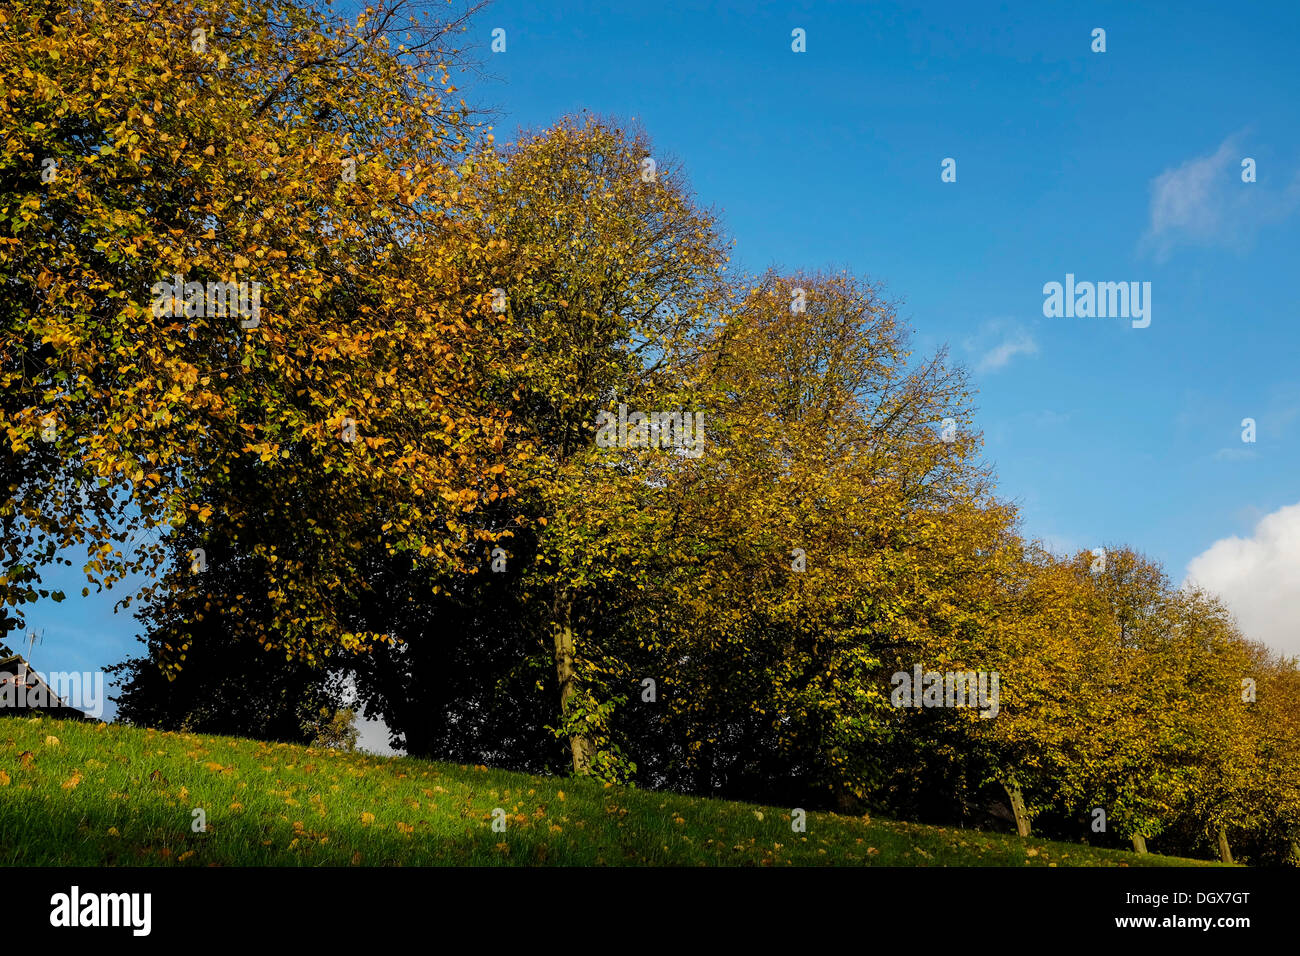 Chester, Cheshire, Regno Unito. 27 ott 2013. Cielo blu chiaro con il sole e una brezza leggera prima dell'arrivo della tempesta meteo per arrivare più tardi nella giornata. Credito: Andrew Paterson/Alamy Live News Foto Stock